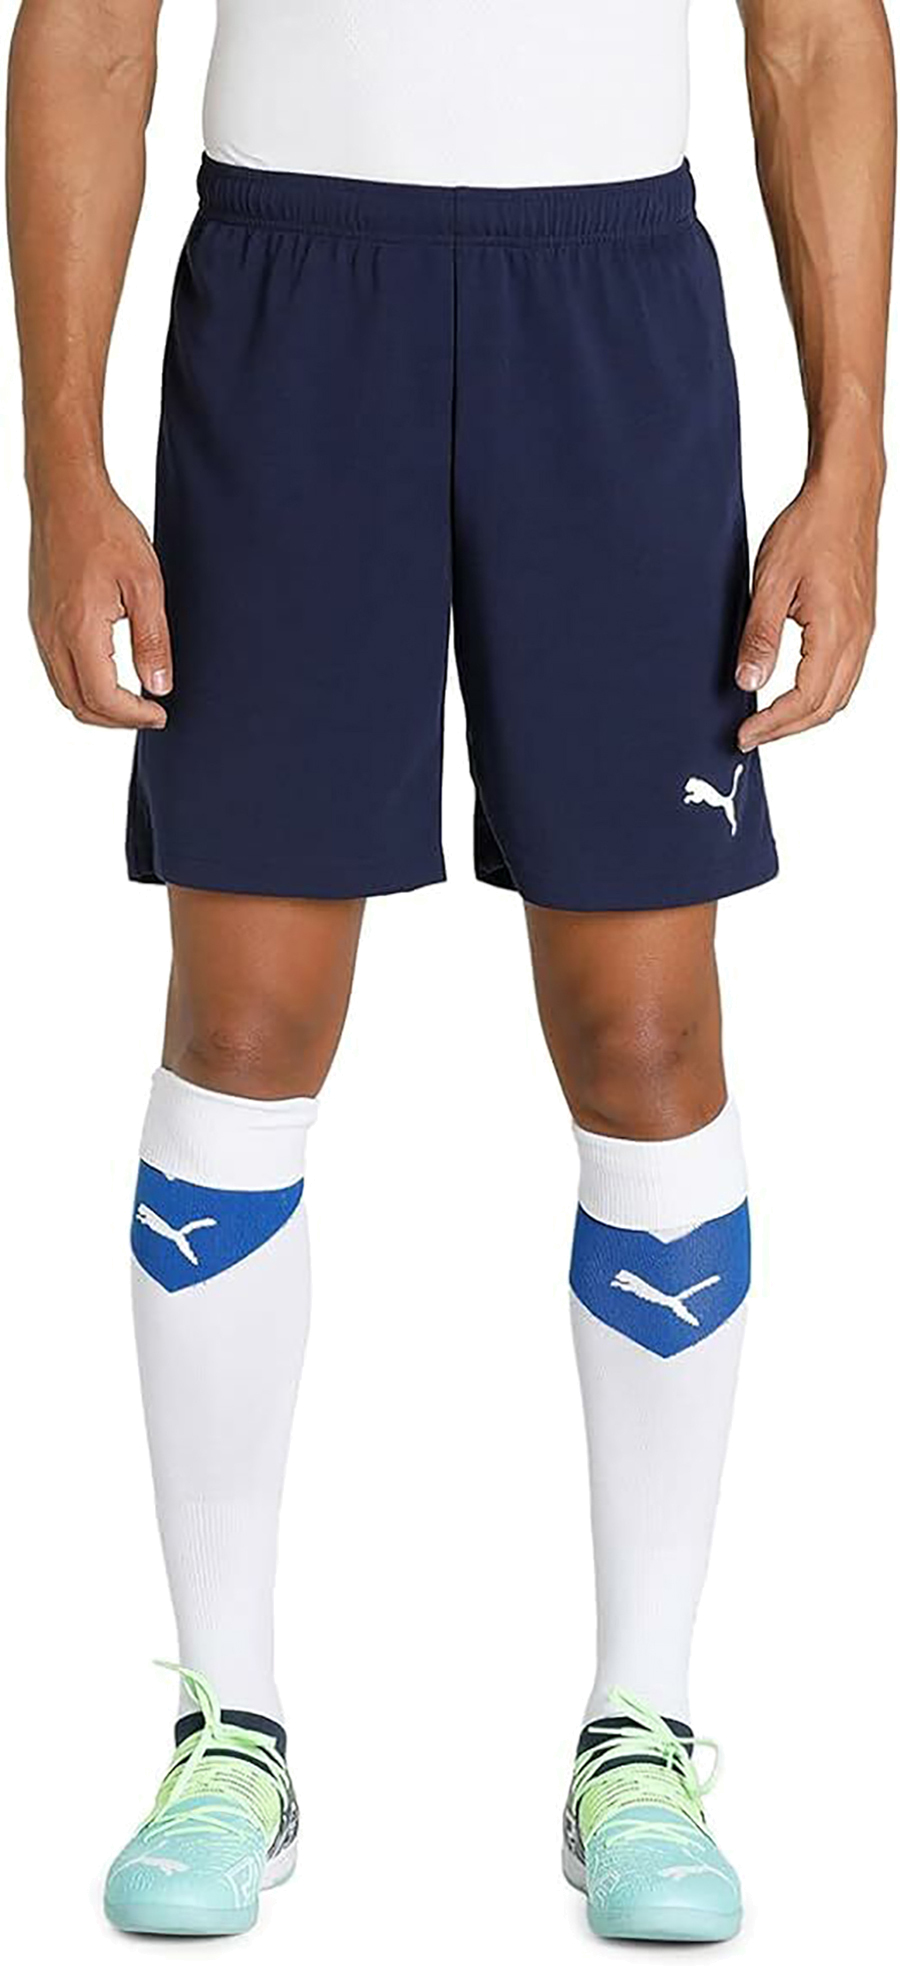 Шорты мужские Puma Individualrise Shorts синие XS